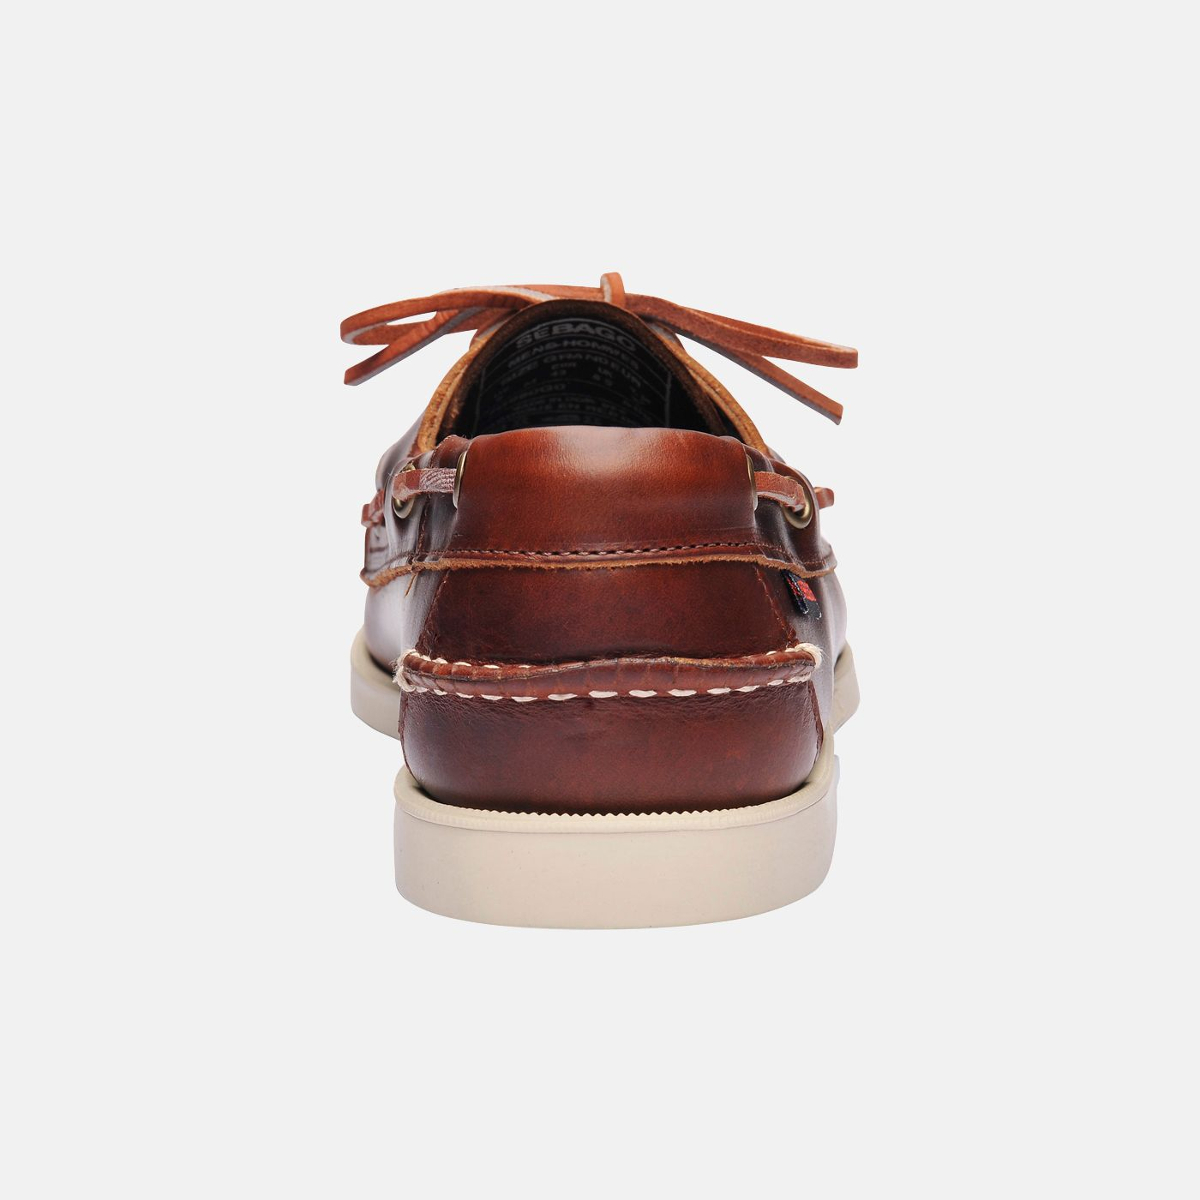 Sebago Docksides bootschoen heren brown oiled waxy leather, maat EU 45 (US 11)